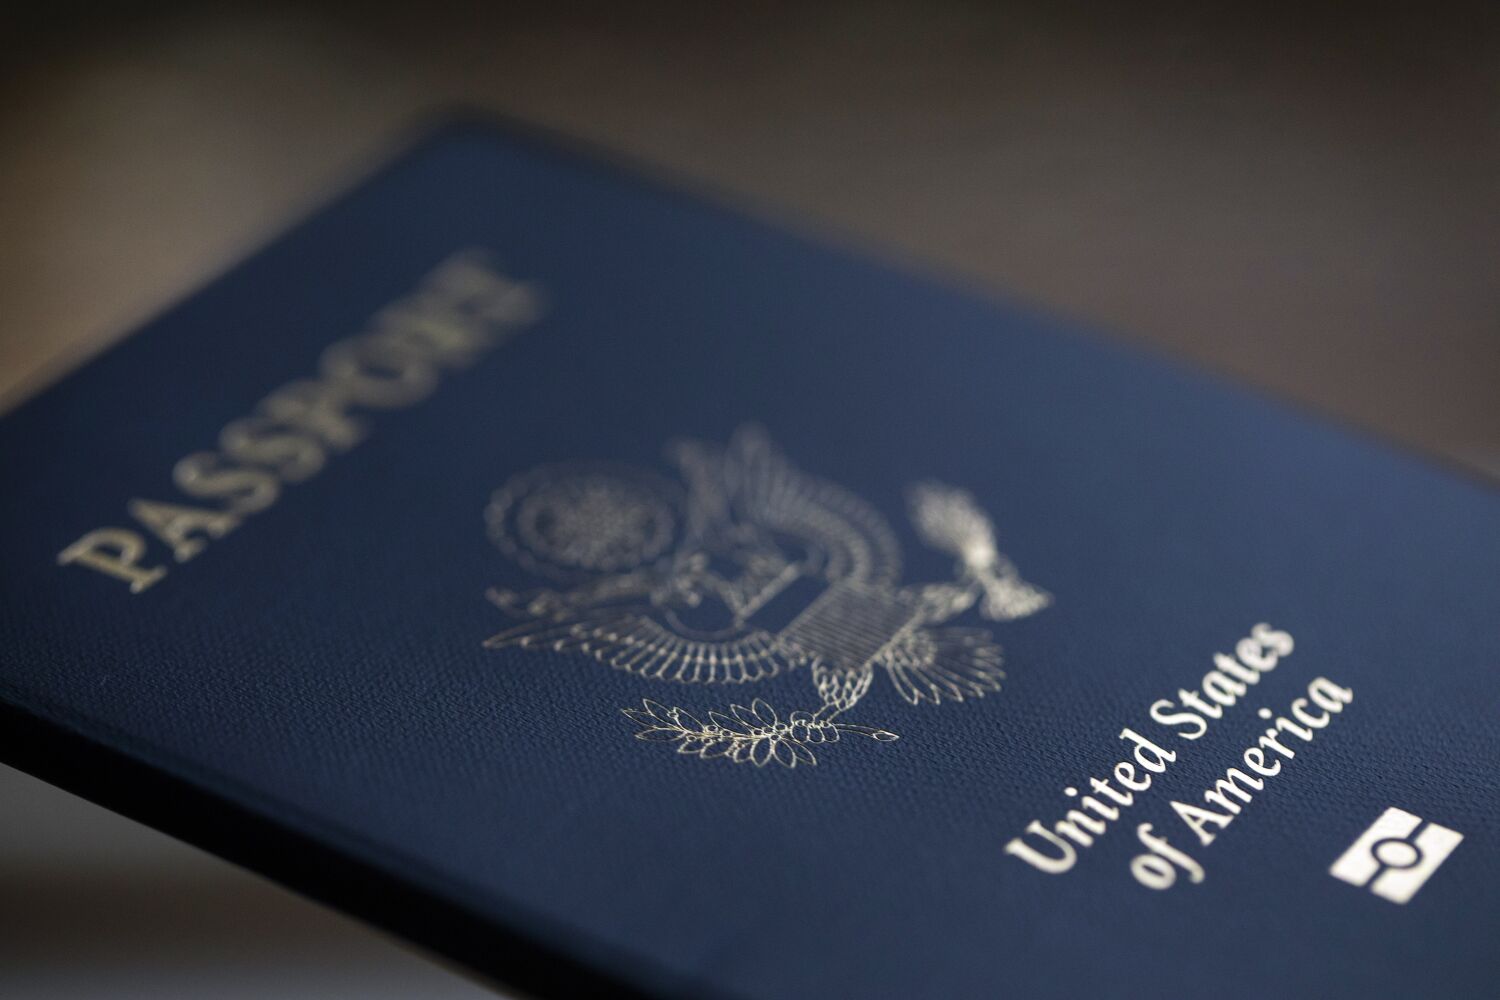 Yurtdışına mı seyahat ediyorsunuz? Pasaport bekleme süreleri hızla artıyor